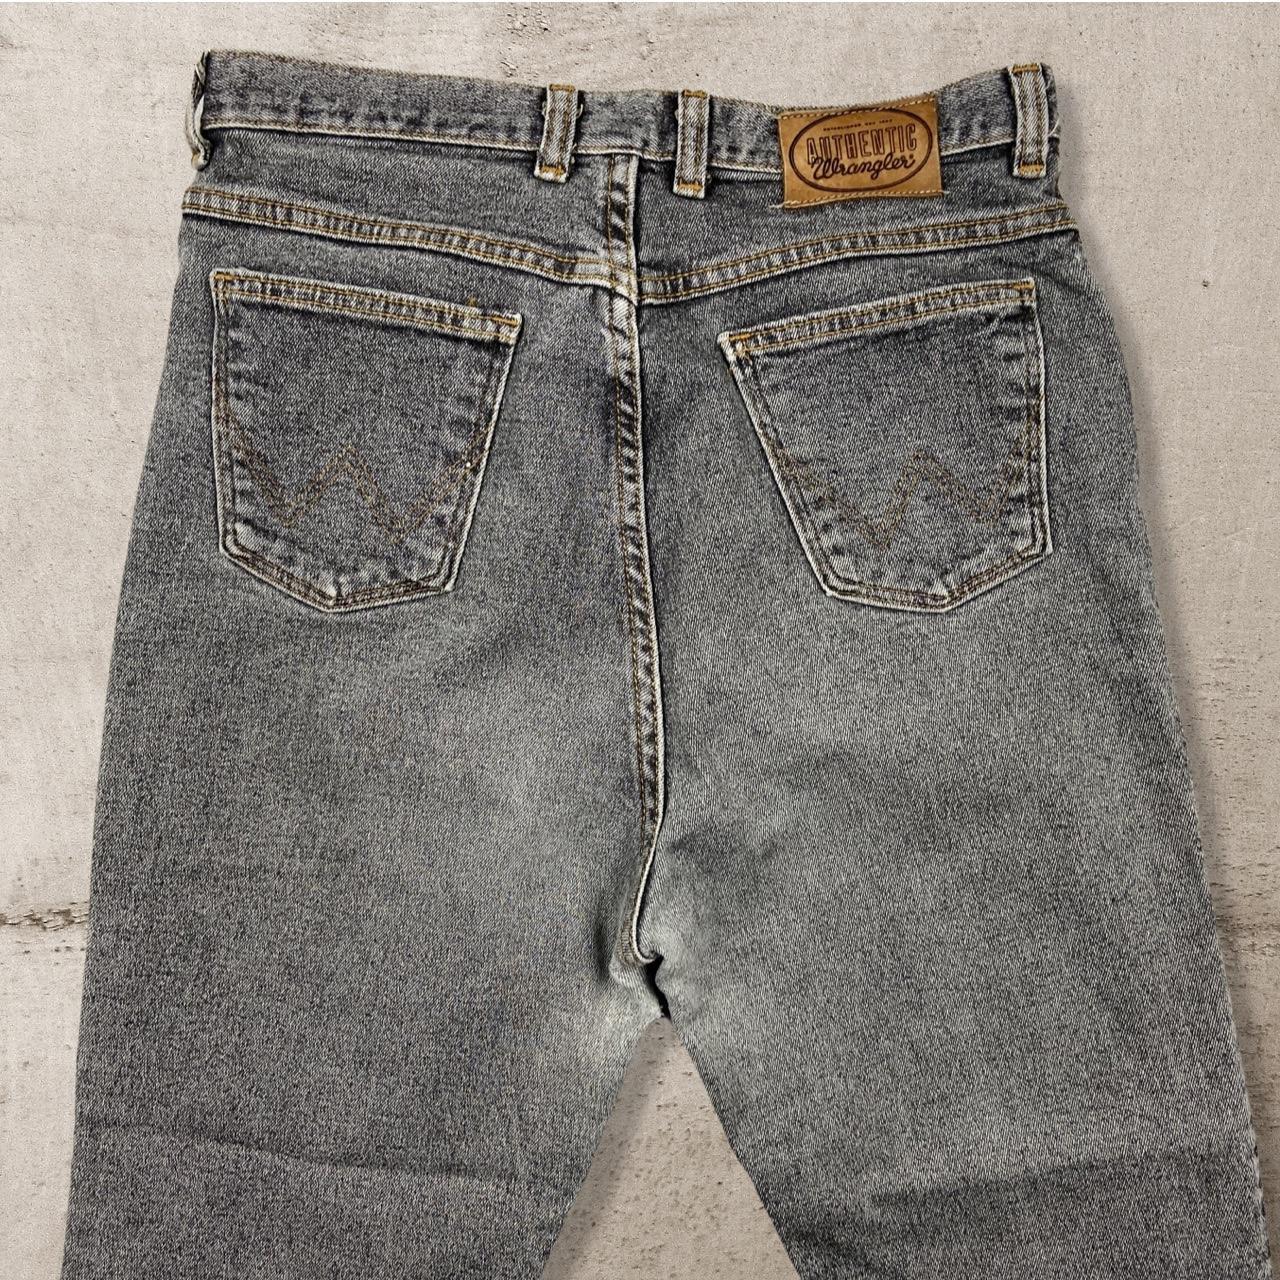 Wrangler vintage slim fit jeans Measurements are... - Depop